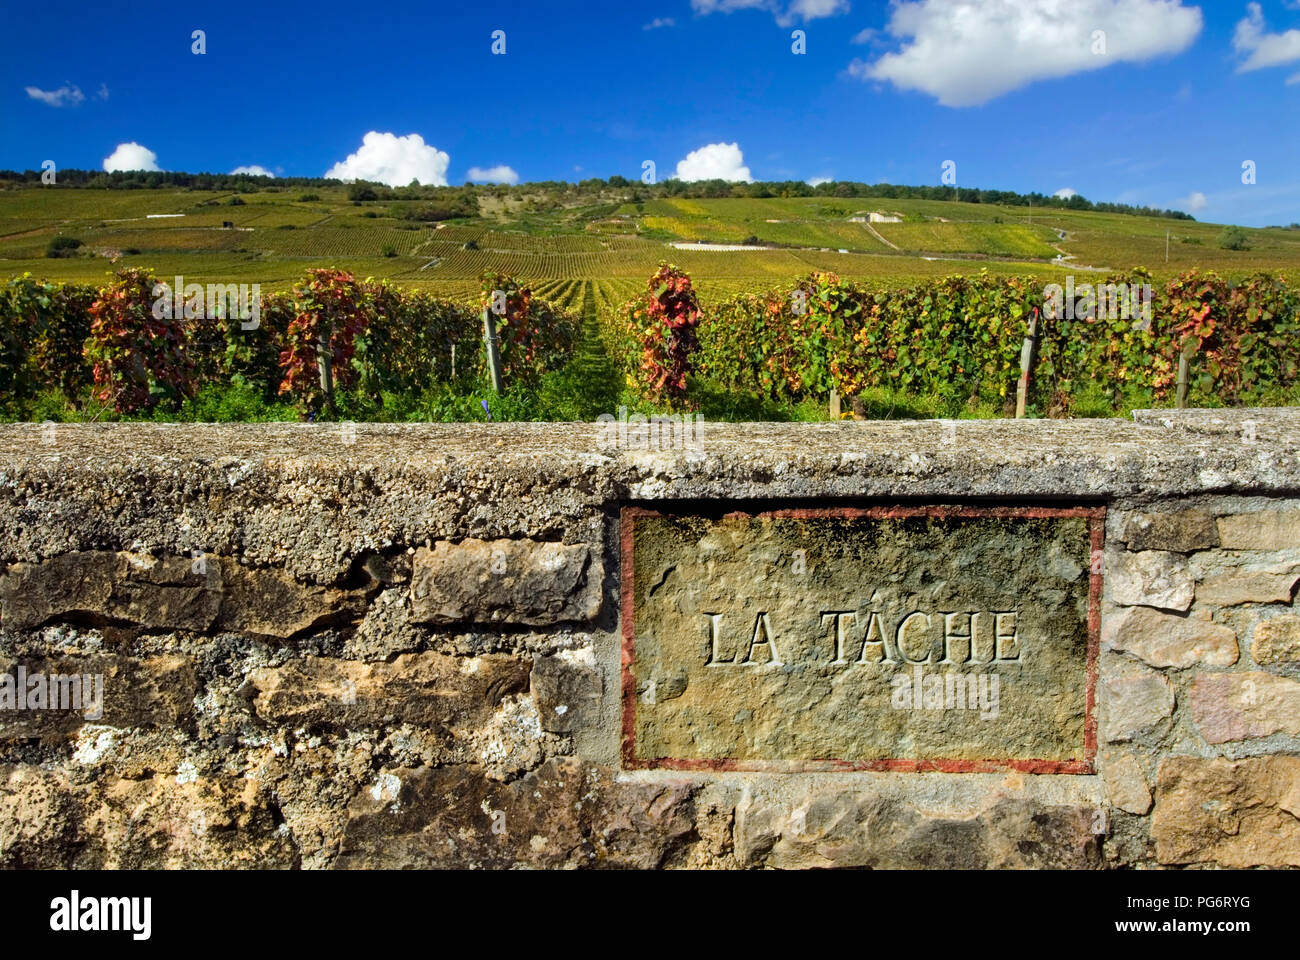 LA TACHE DRC pierre gravée plaque dans mur de la Tache de vignoble Domaine de la Romanée-conti, Vosne Romanée, Côte d'Or, France Banque D'Images